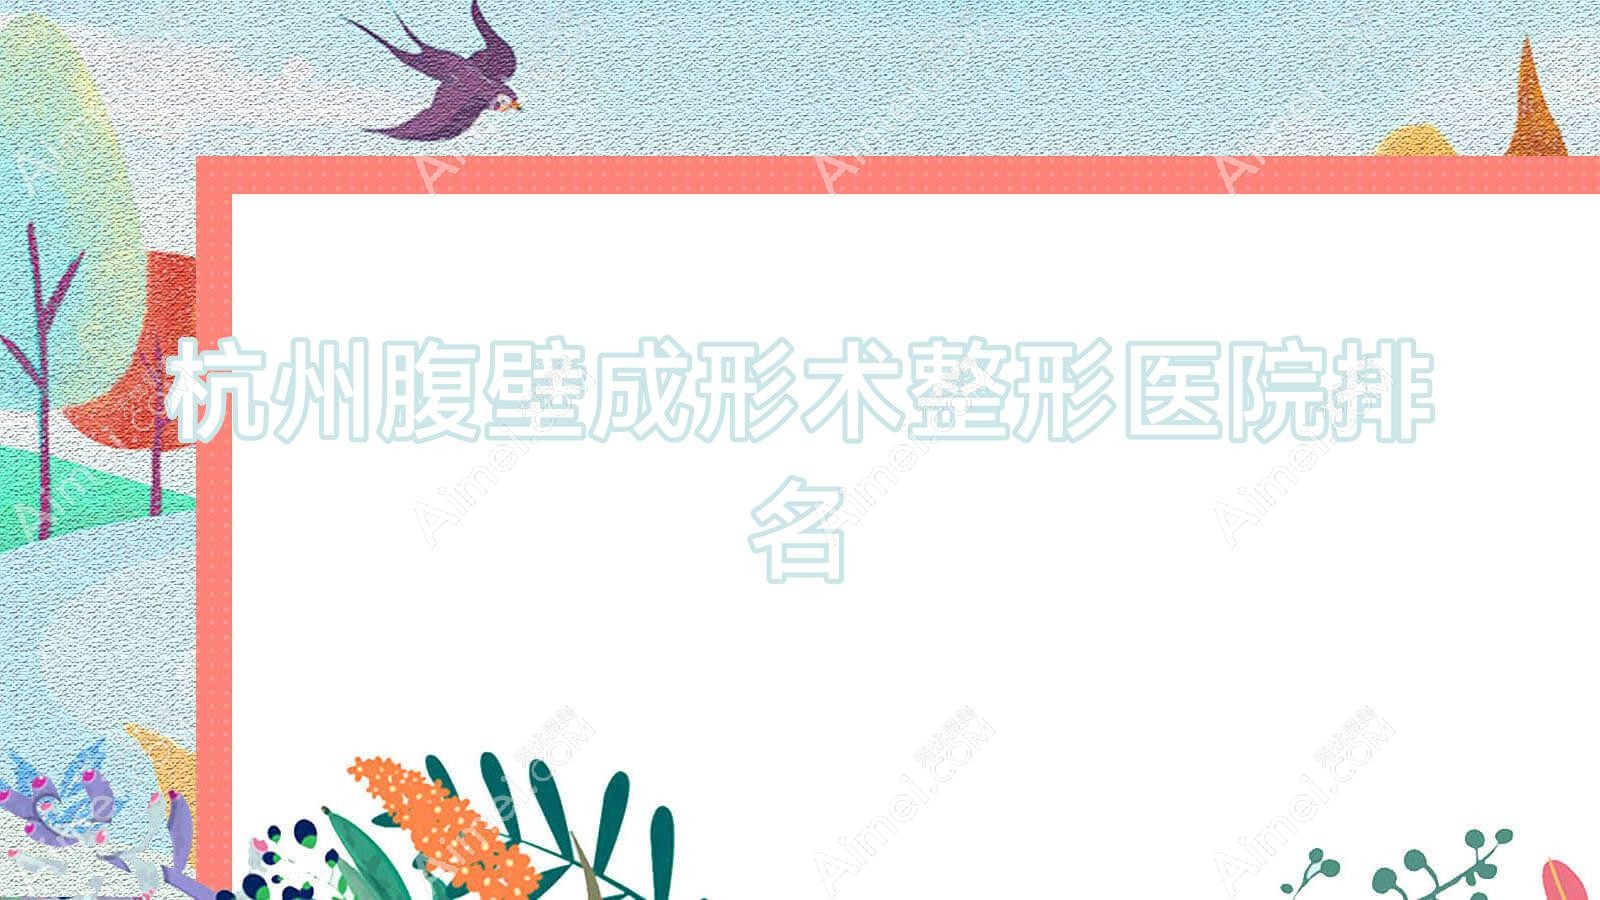 杭州腹壁成形术医院排名前列的杭州班睿漫诗做激光溶脂瘦腹部不错